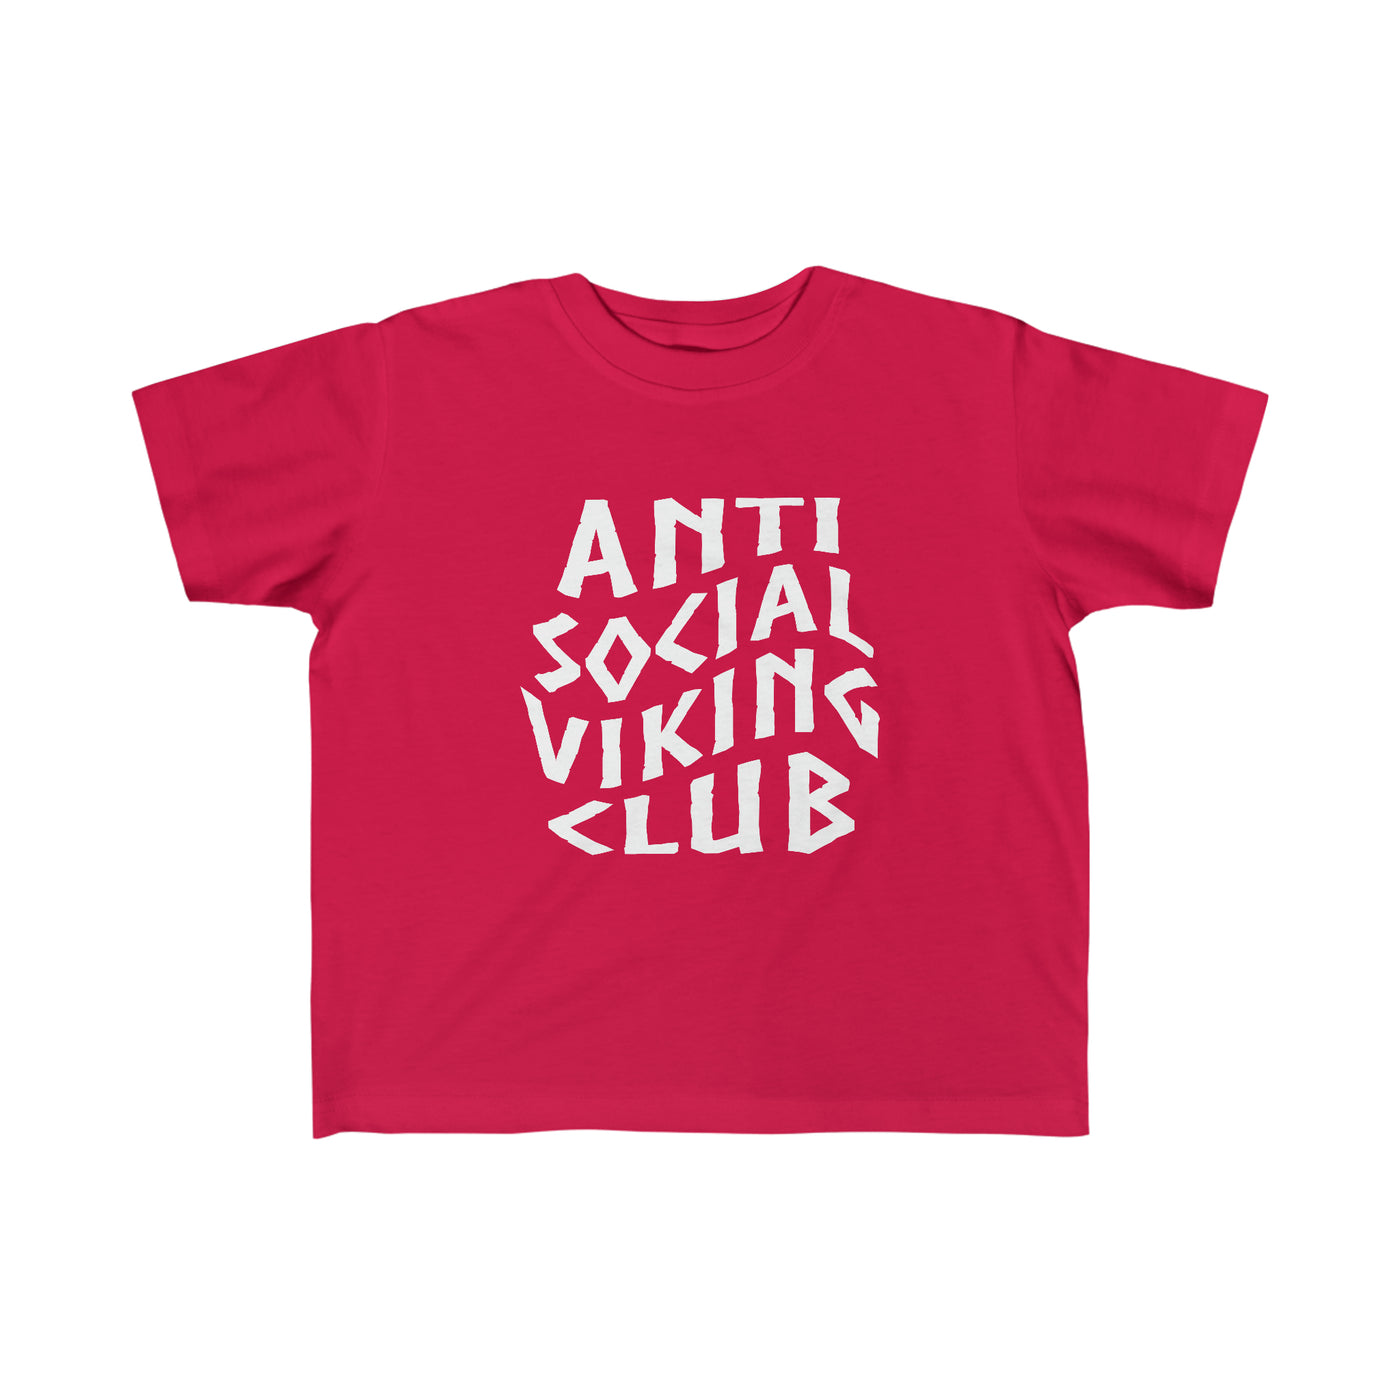 Anti Social Viking Club Toddler Tee